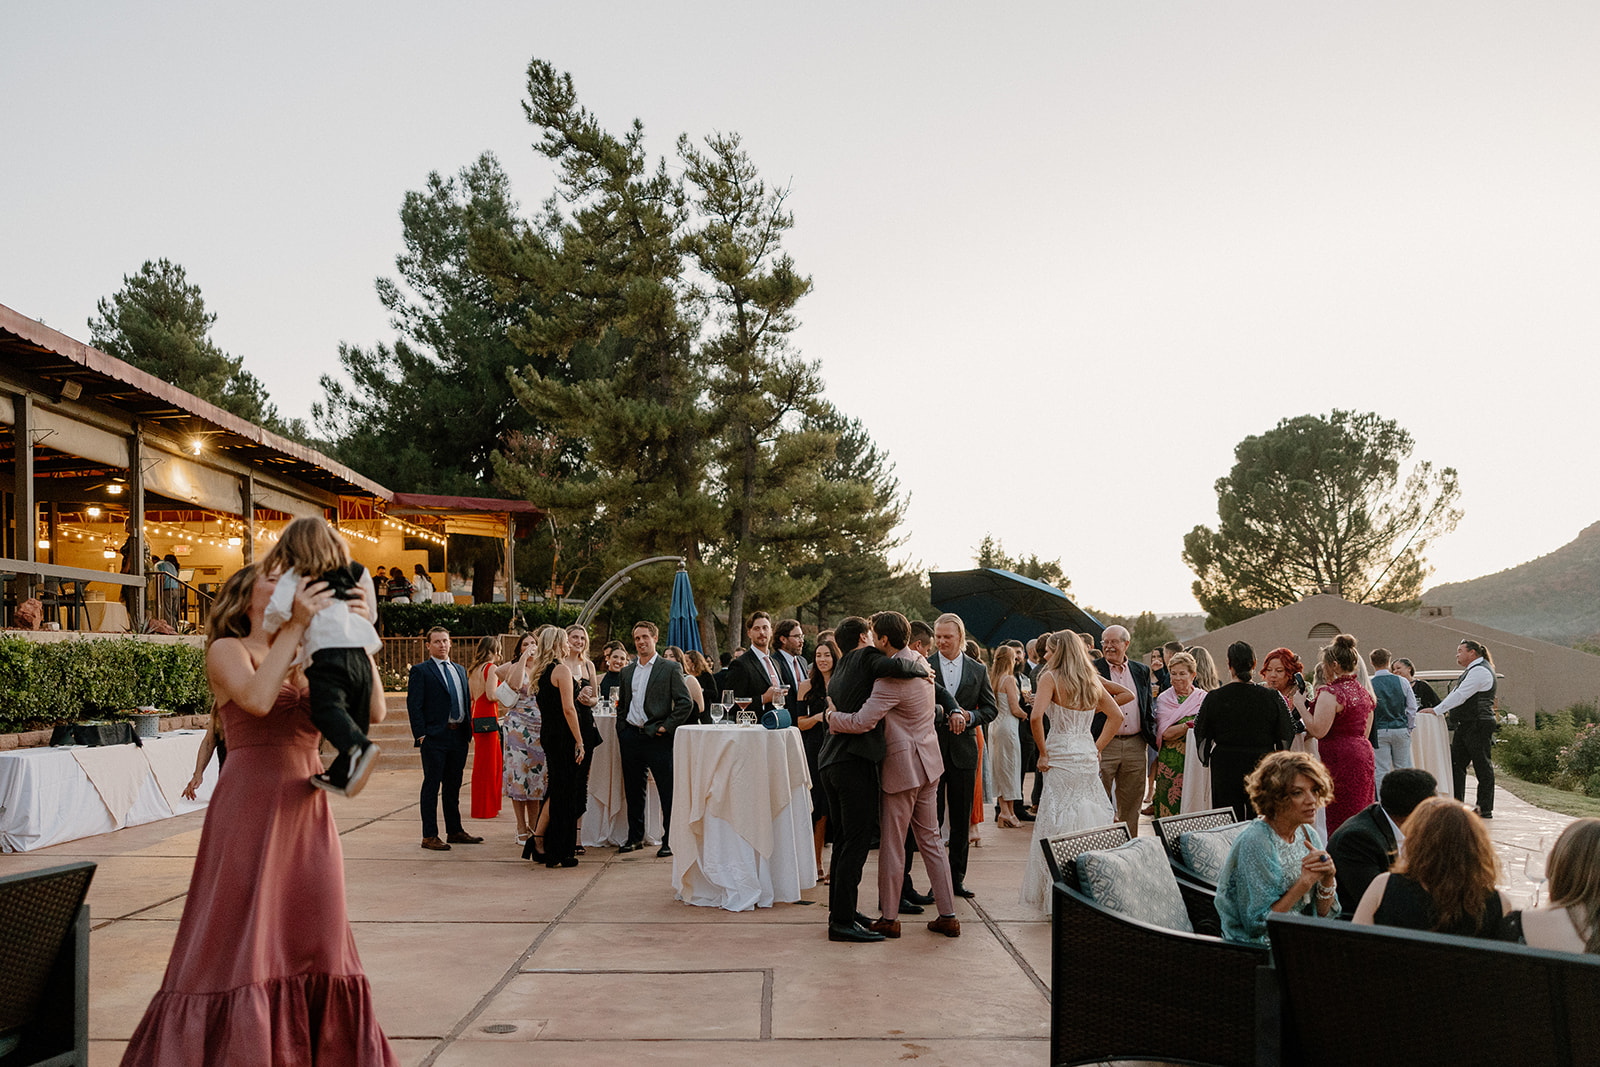 Guests celebrate during the dreamy fairy garden Poco Diablo Resort wedding